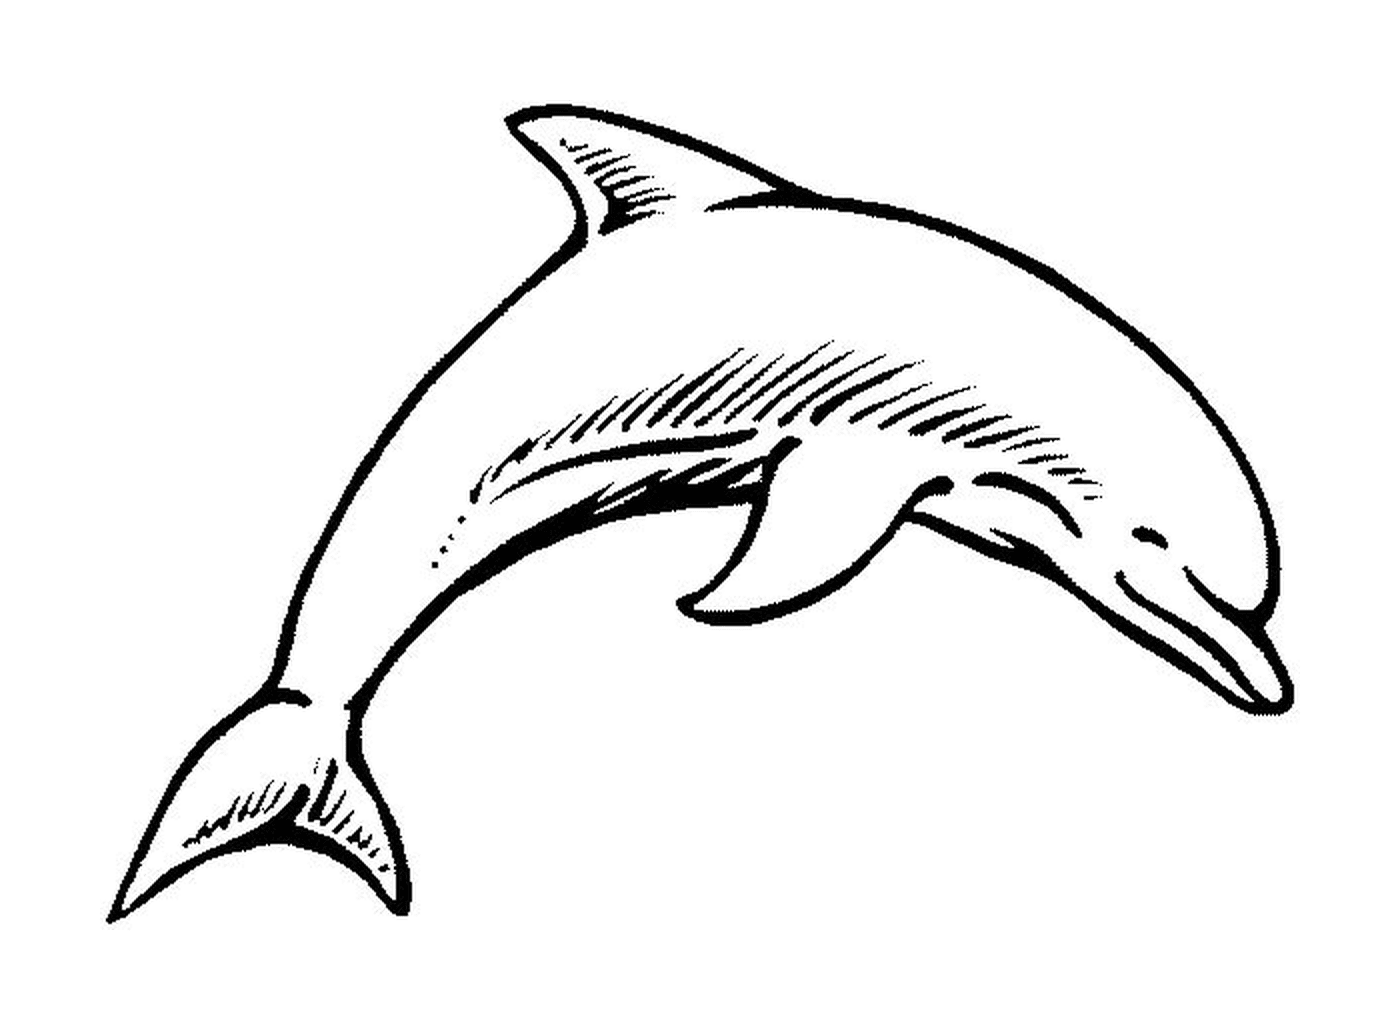  Um golfinho bebê 